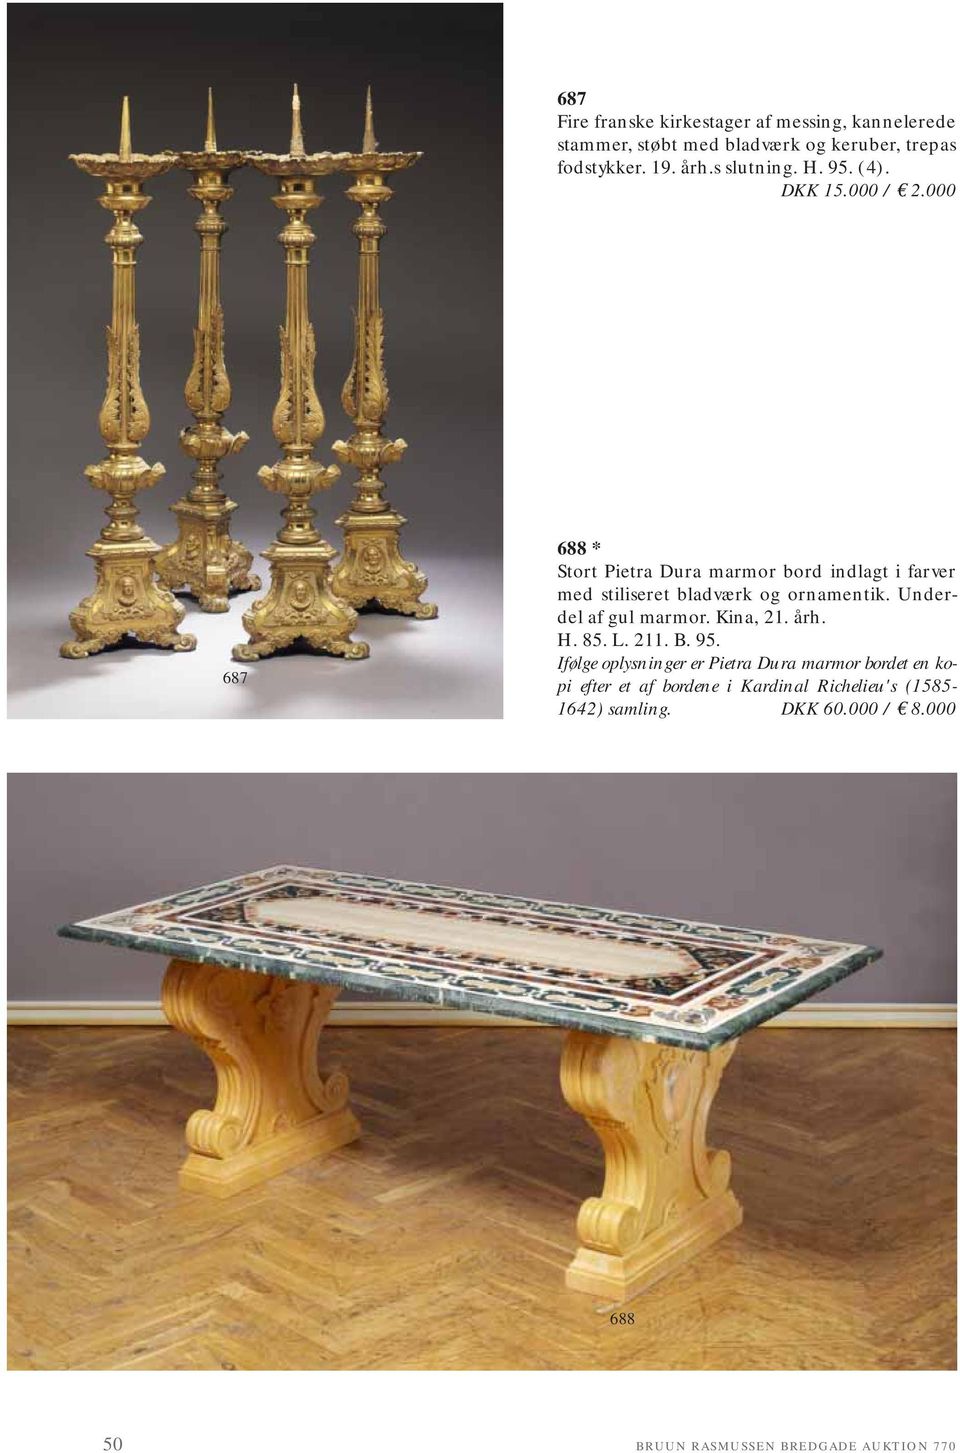 000 687 688 * Stort Pietra Dura marmor bord indlagt i farver med stiliseret bladværk og ornamentik. Underdel af gul marmor.